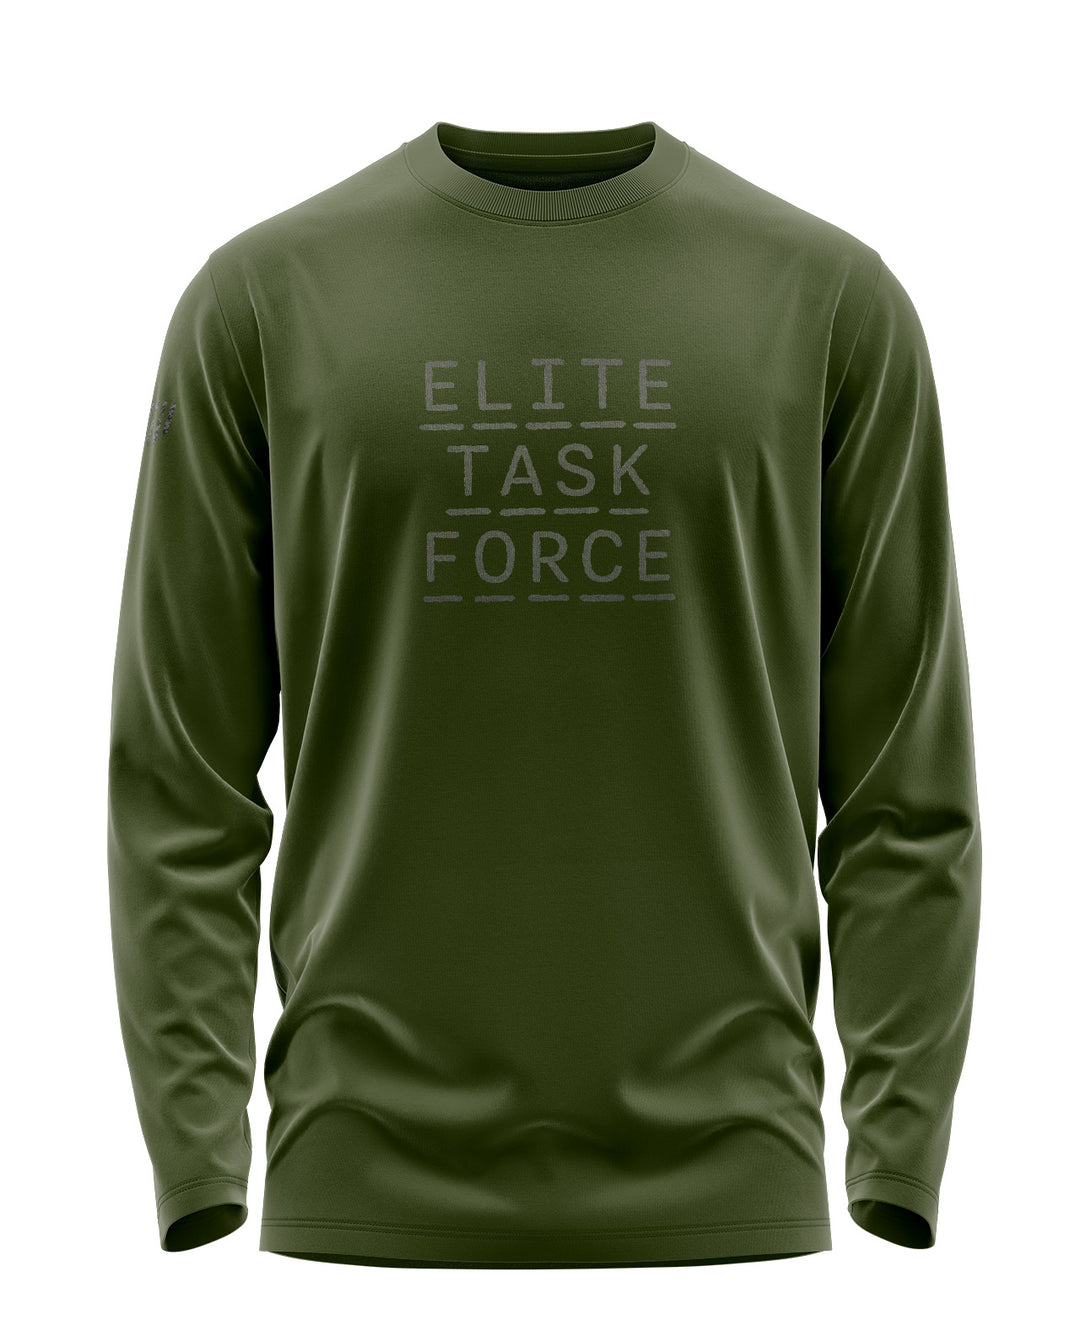 ELITE TASK FORCE Full Sleeve T-Shirt